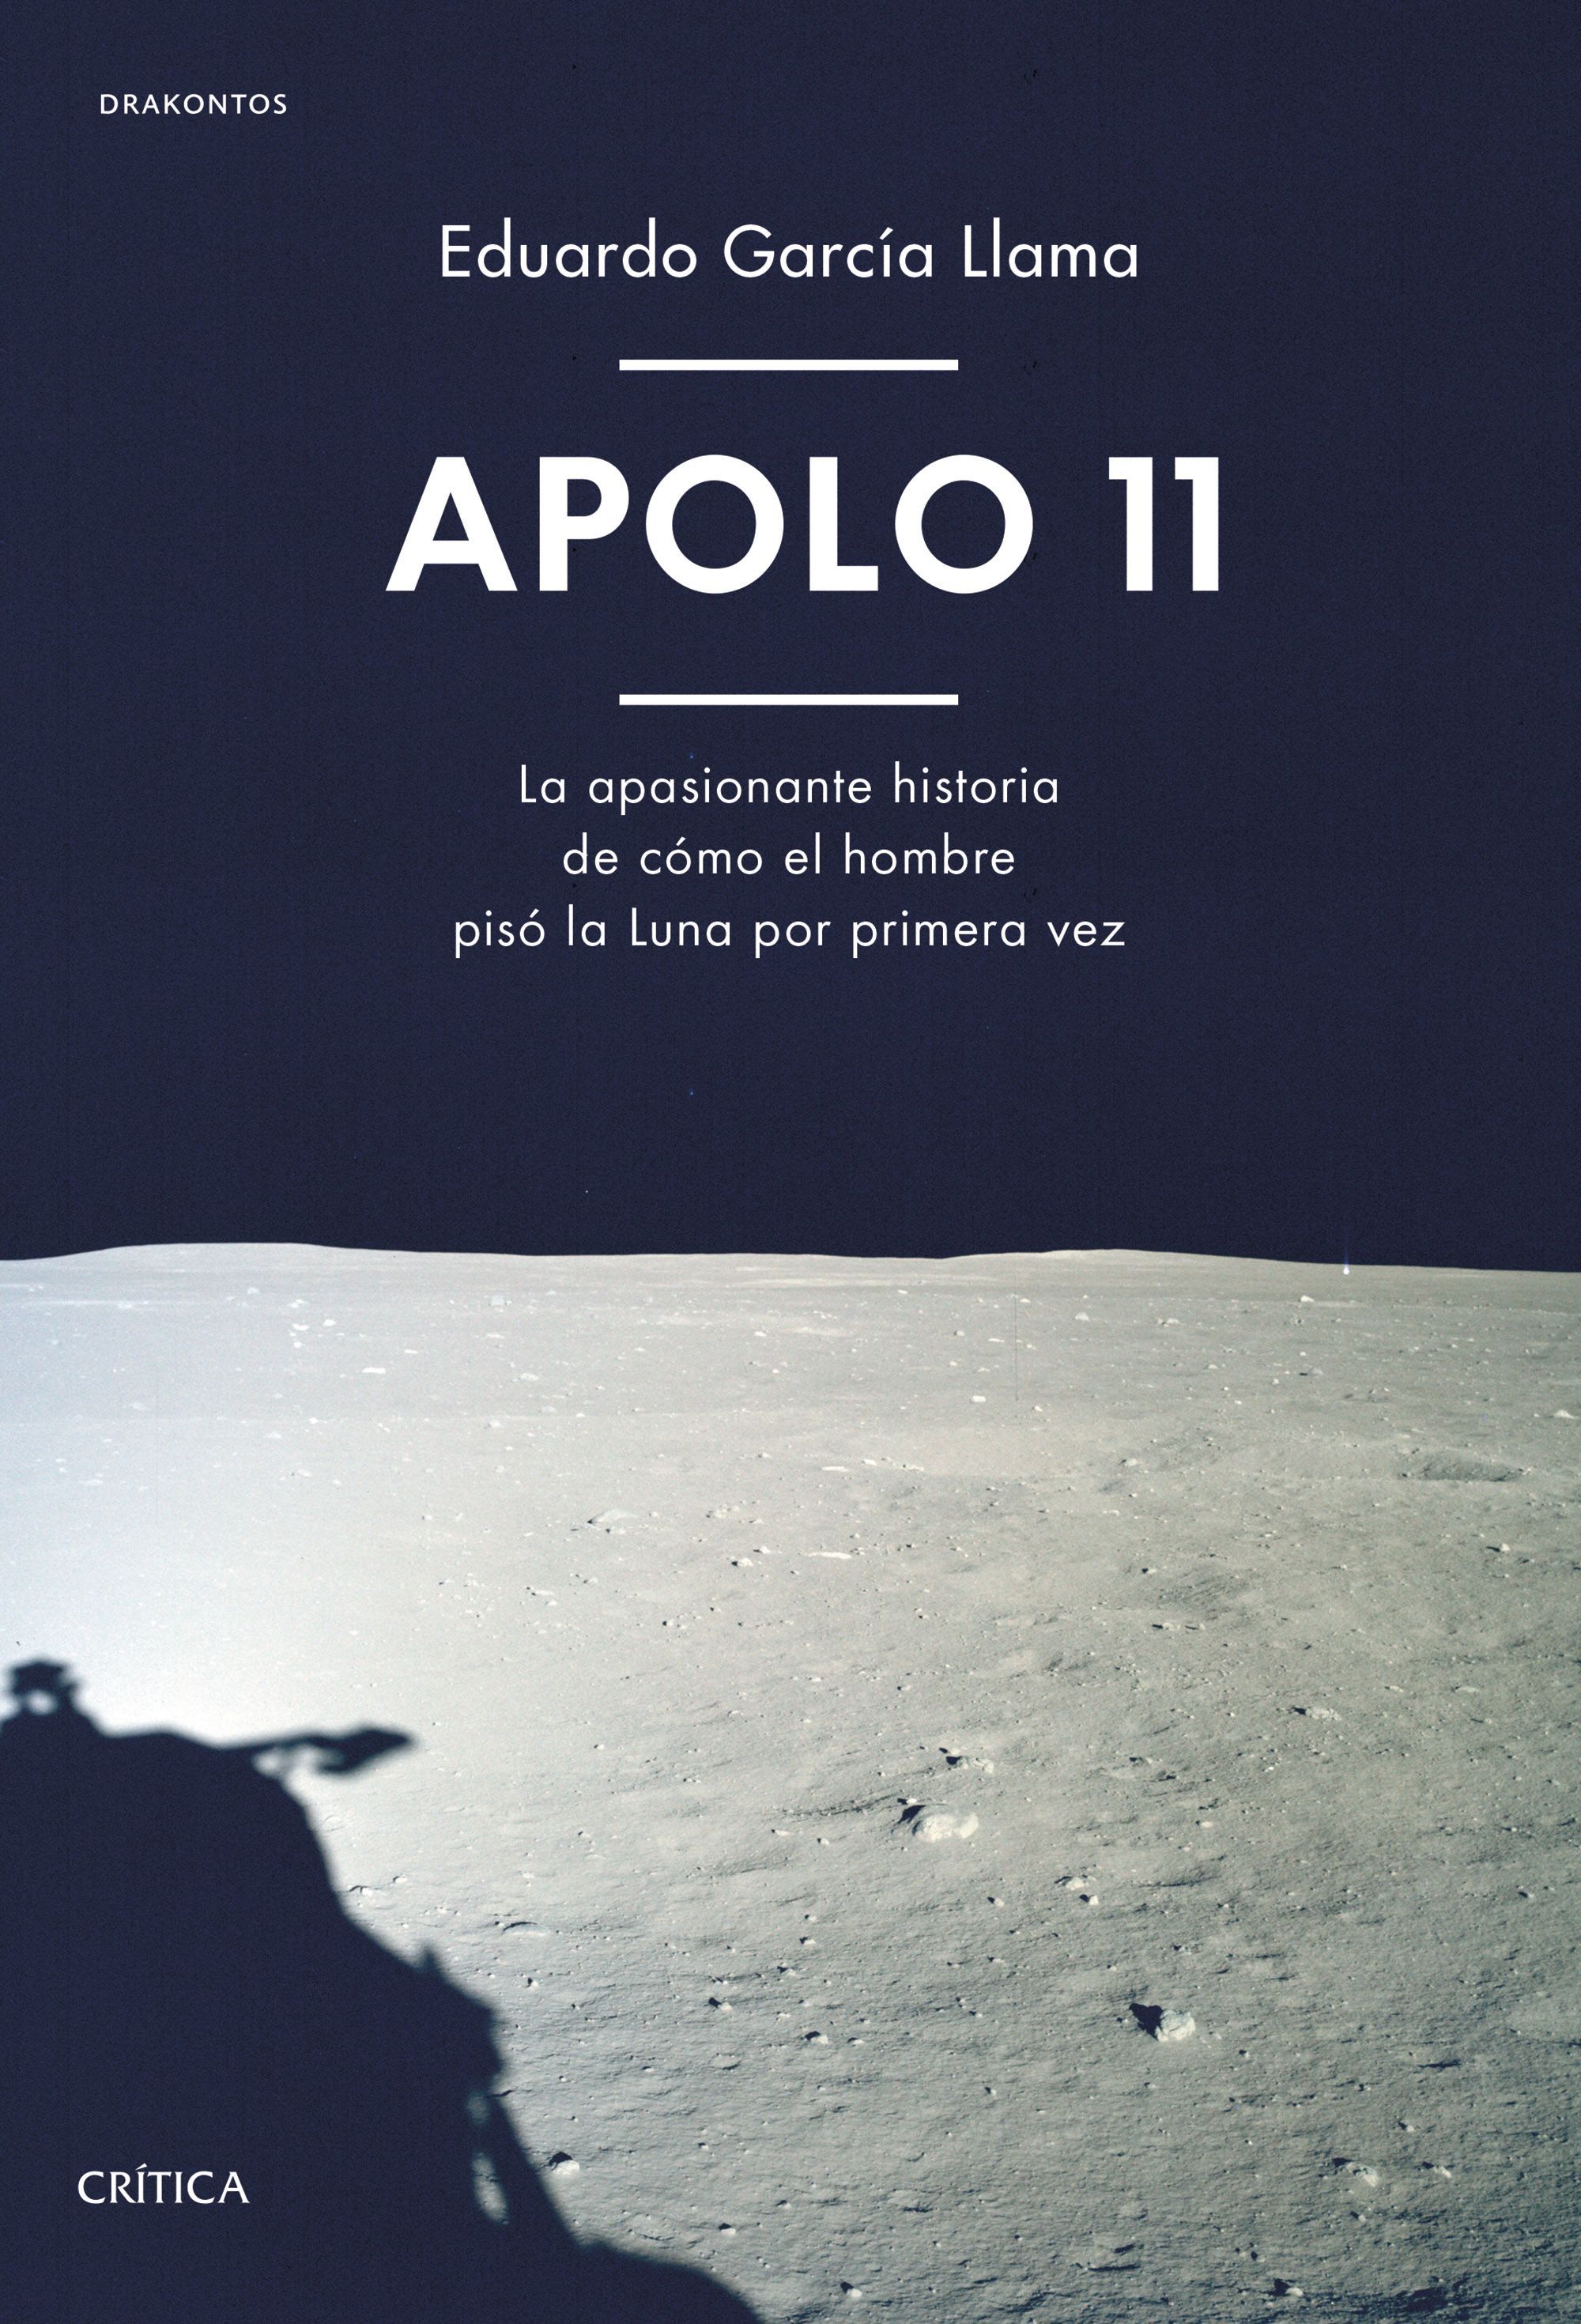 Cómo vivieron los protagonistas del Apolo 11 el hito de llegar a la luna